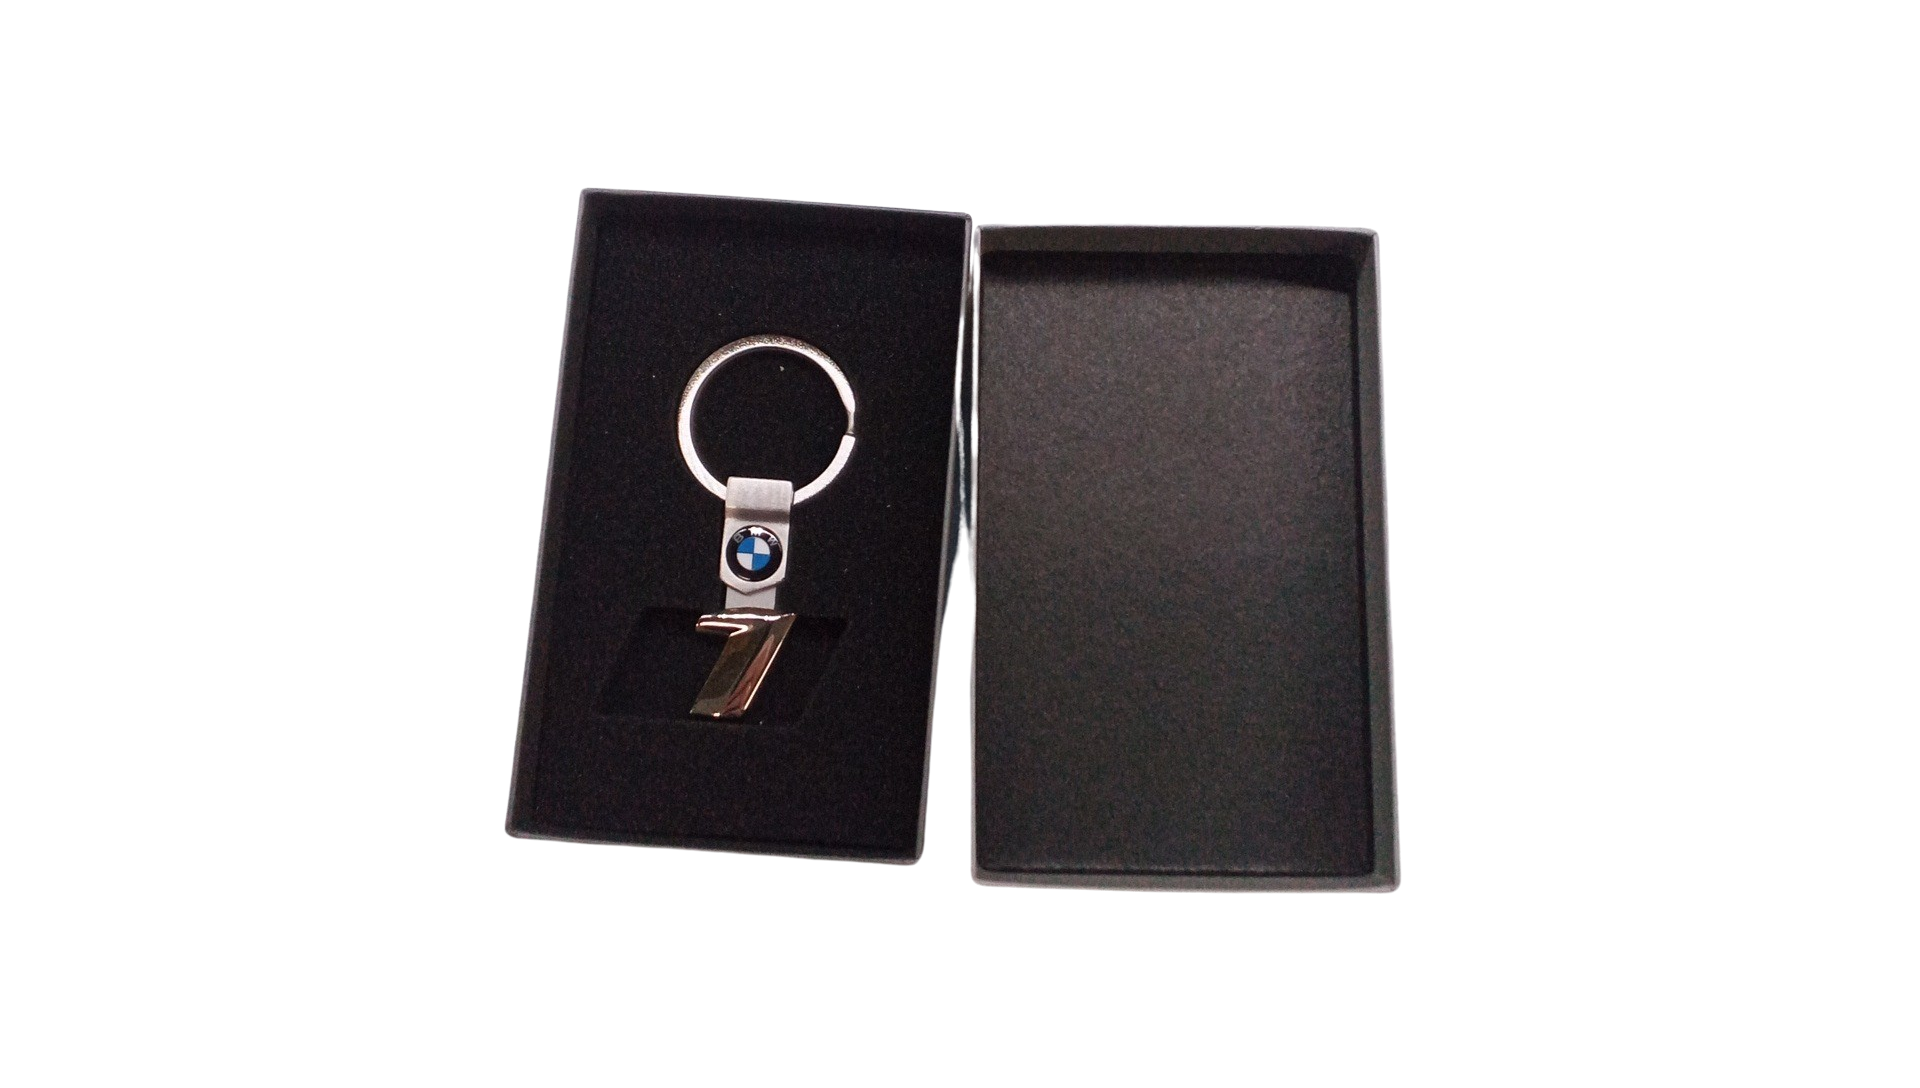 Porte-clé BMW garage - Garage/Atelier/Les cadeaux pour Lui - le